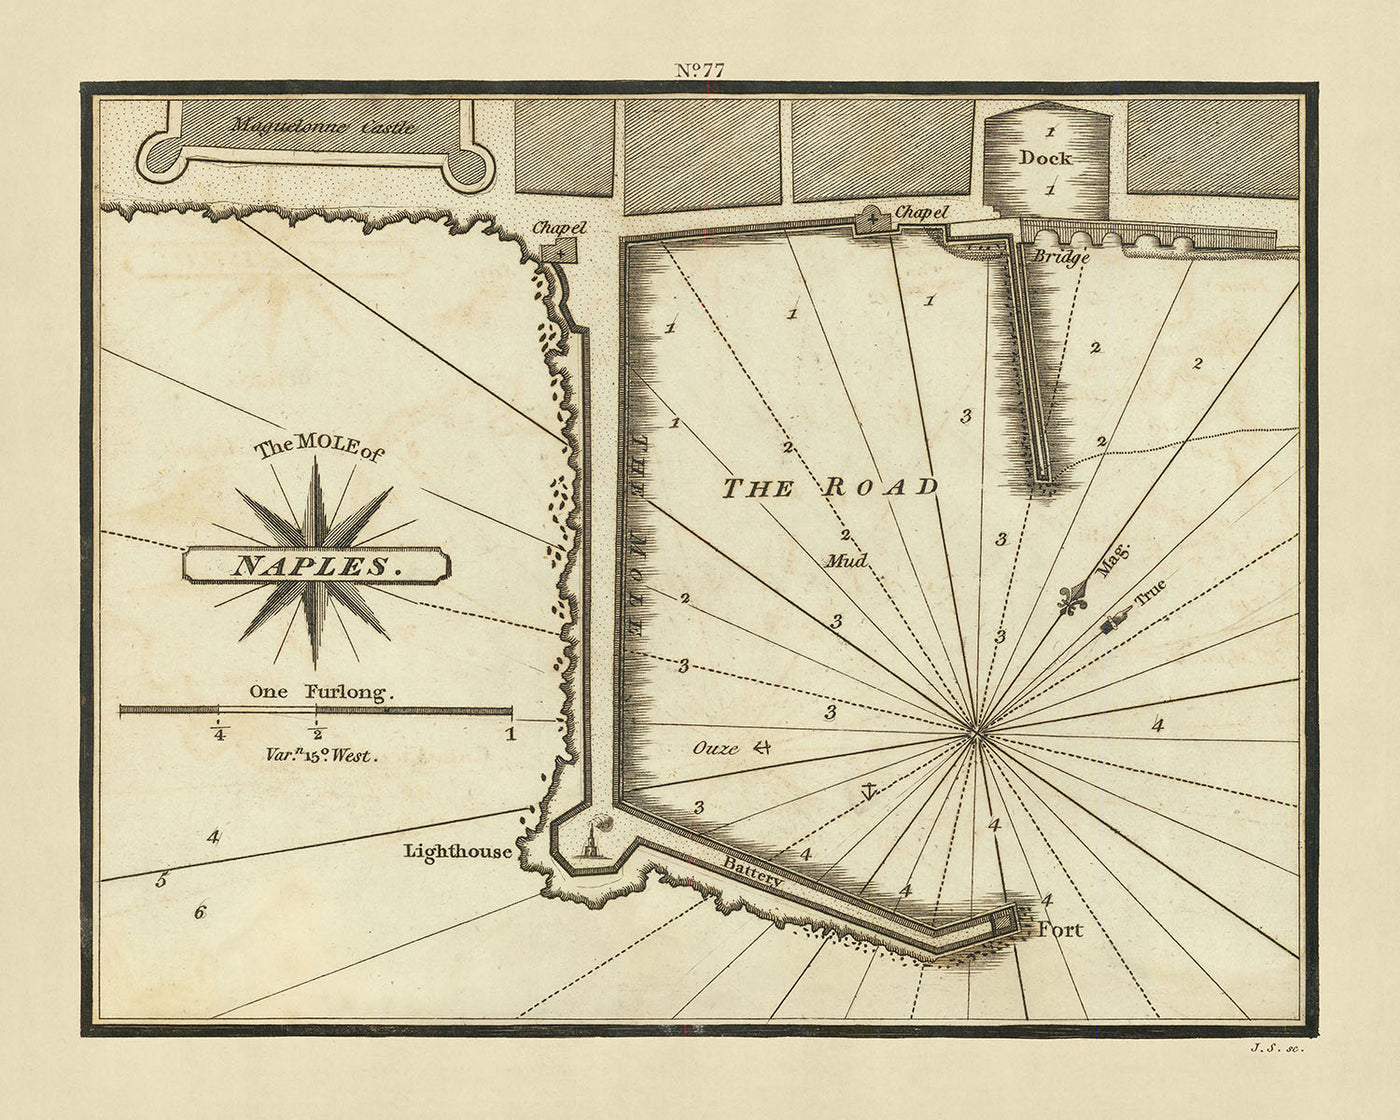 Carta náutica del antiguo topo de Nápoles de Heather, 1802: sondeos, monumentos, historia del puerto